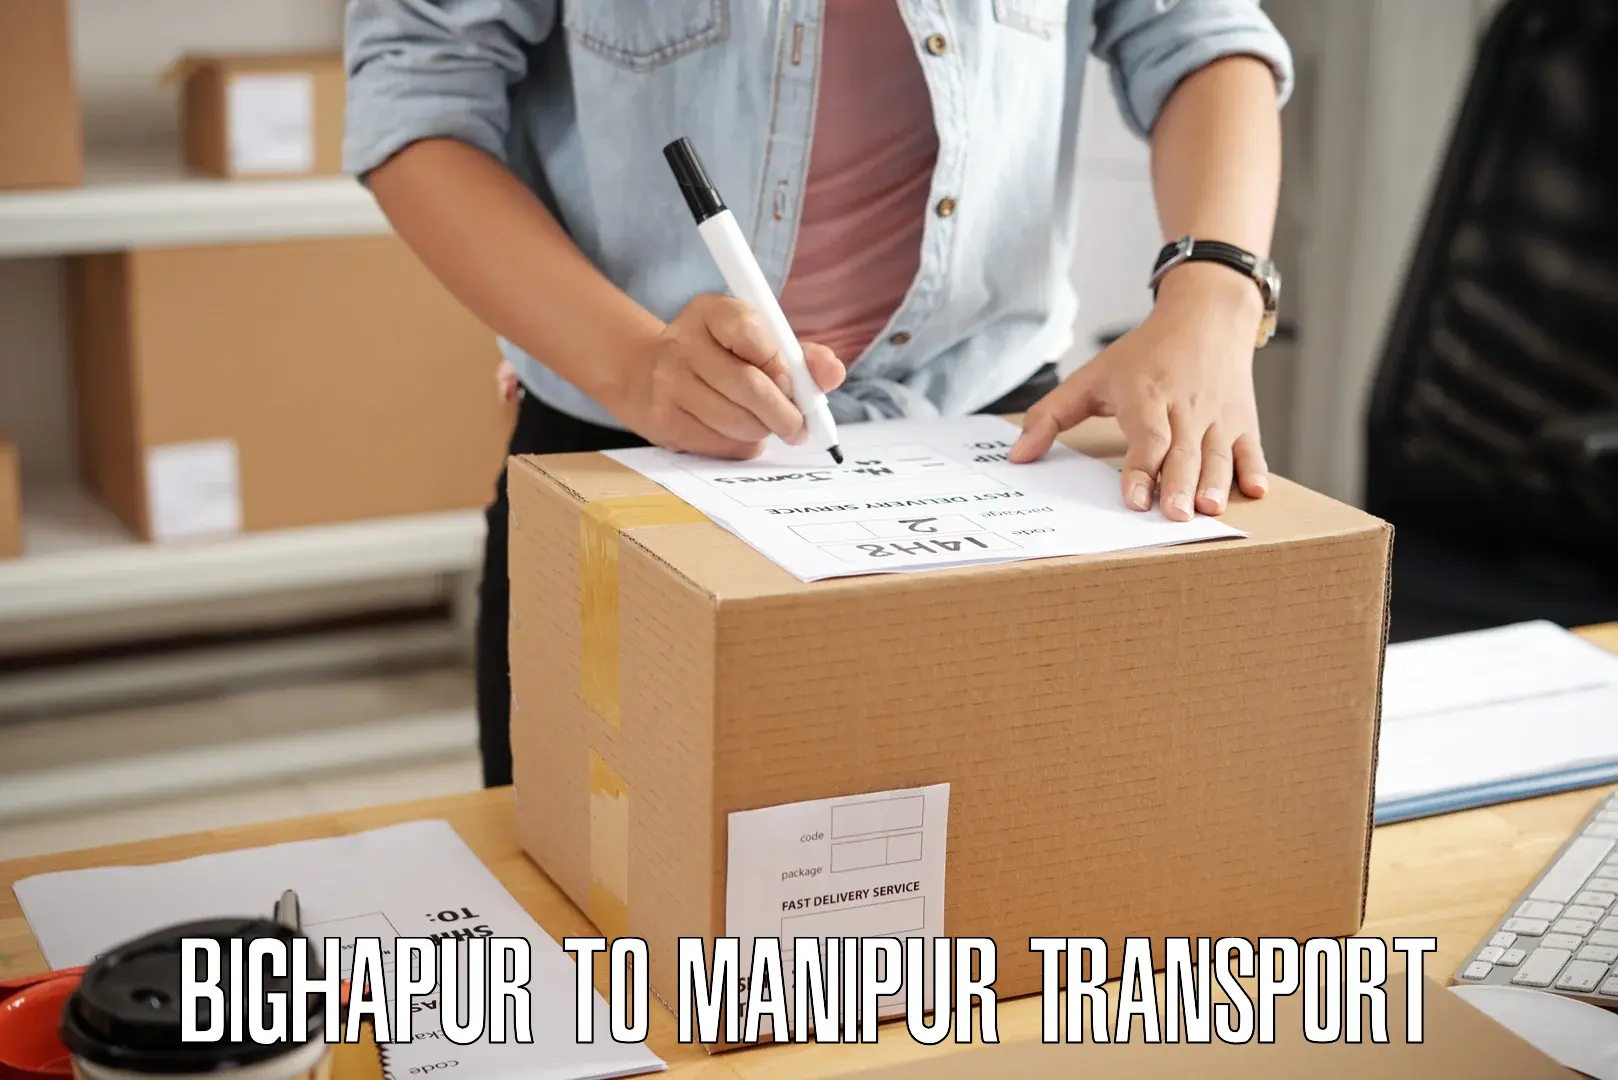 Cargo transportation services Bighapur to Moirang